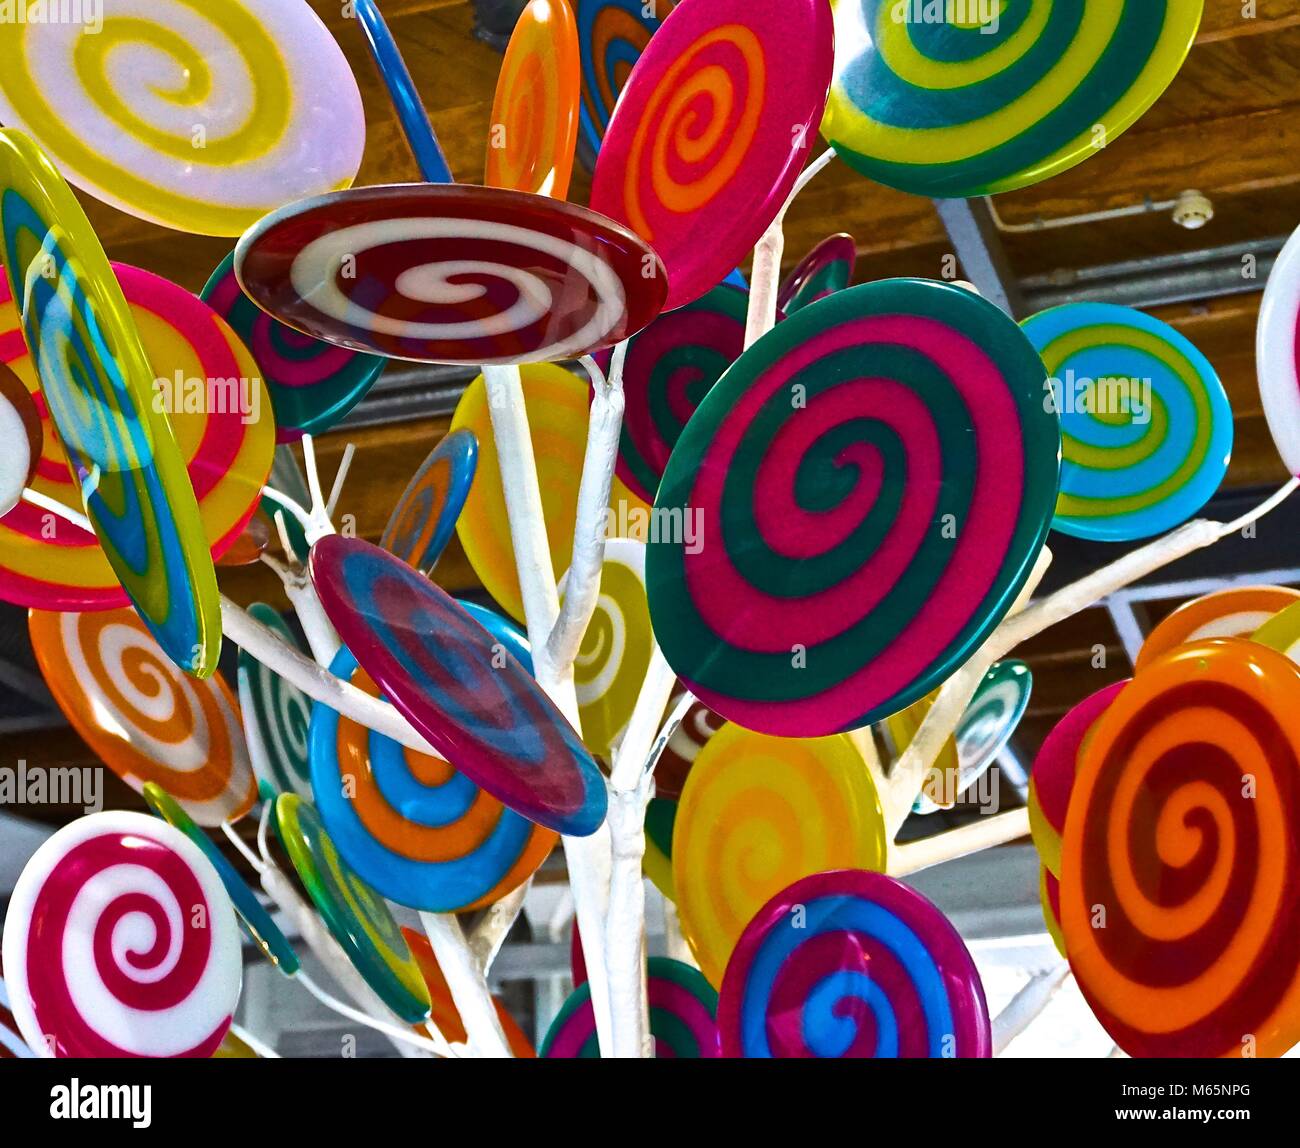 Lollypops for children Stock Photo